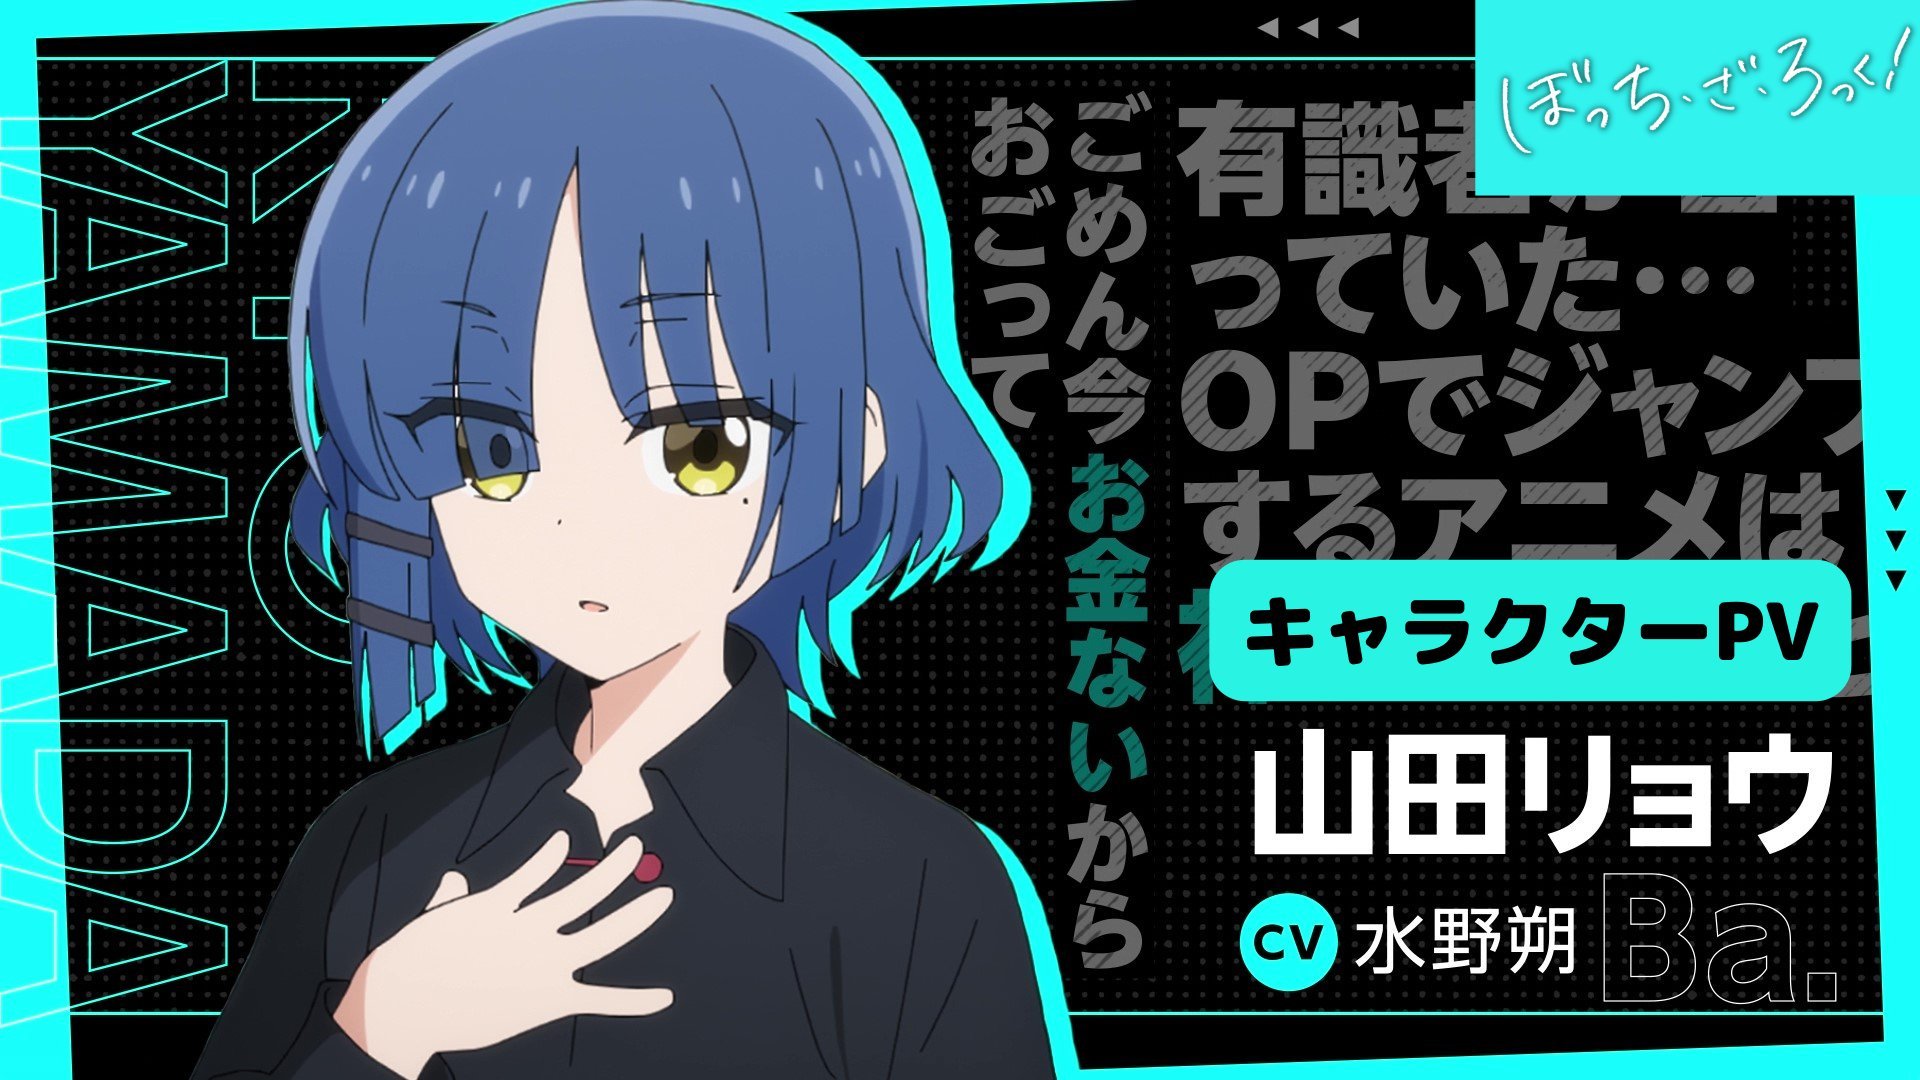 Anime Trending THE ROCK! Yamada Character PV! Ryo Yamada: Saku Mizuno The anime is scheduled for October 8